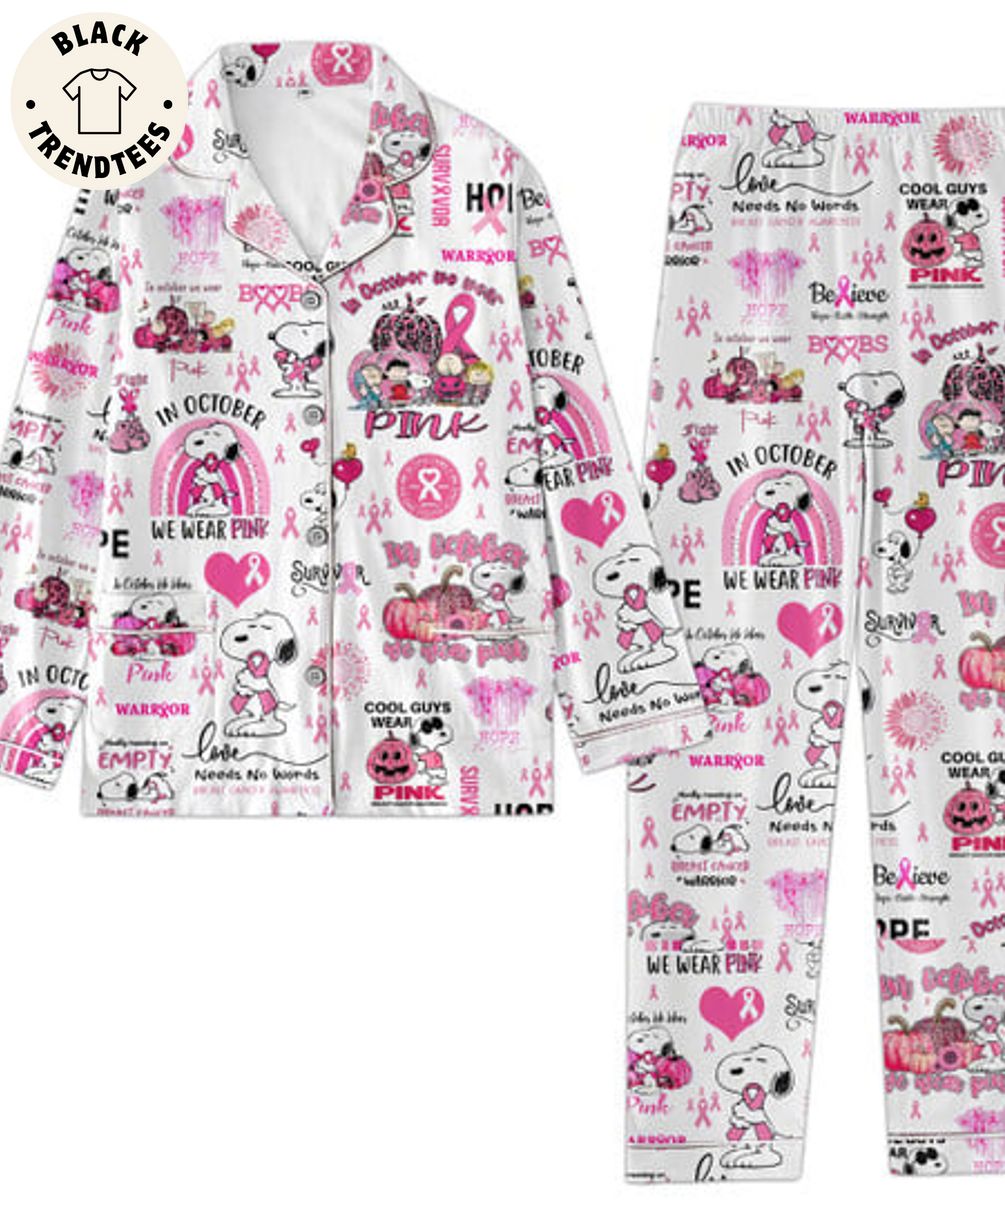 In October We Wear Pink Warryor Love Needs No Words White Pijamas Set